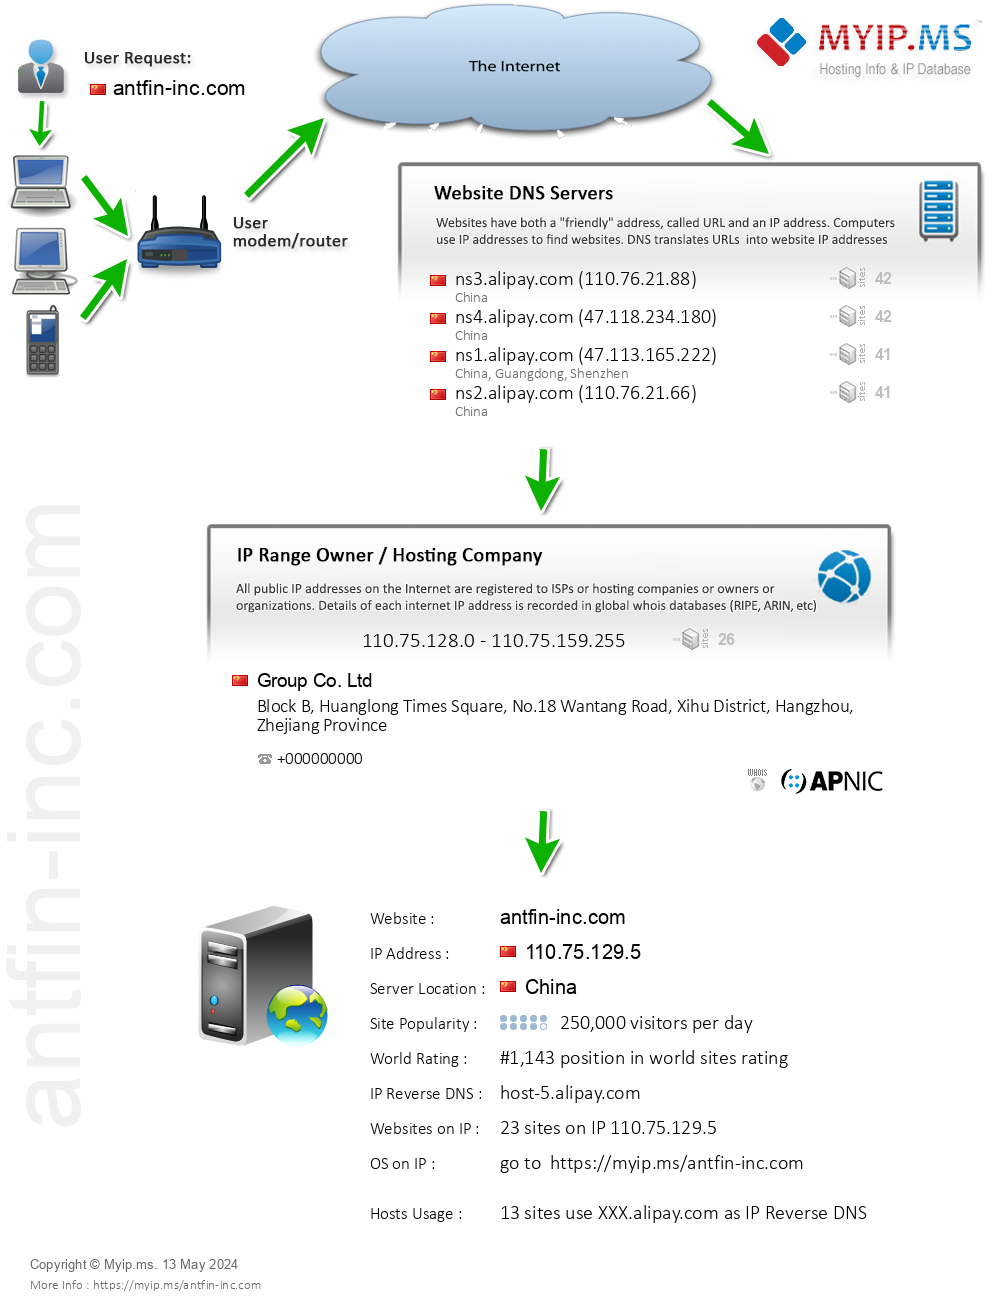 Antfin-inc.com - Website Hosting Visual IP Diagram